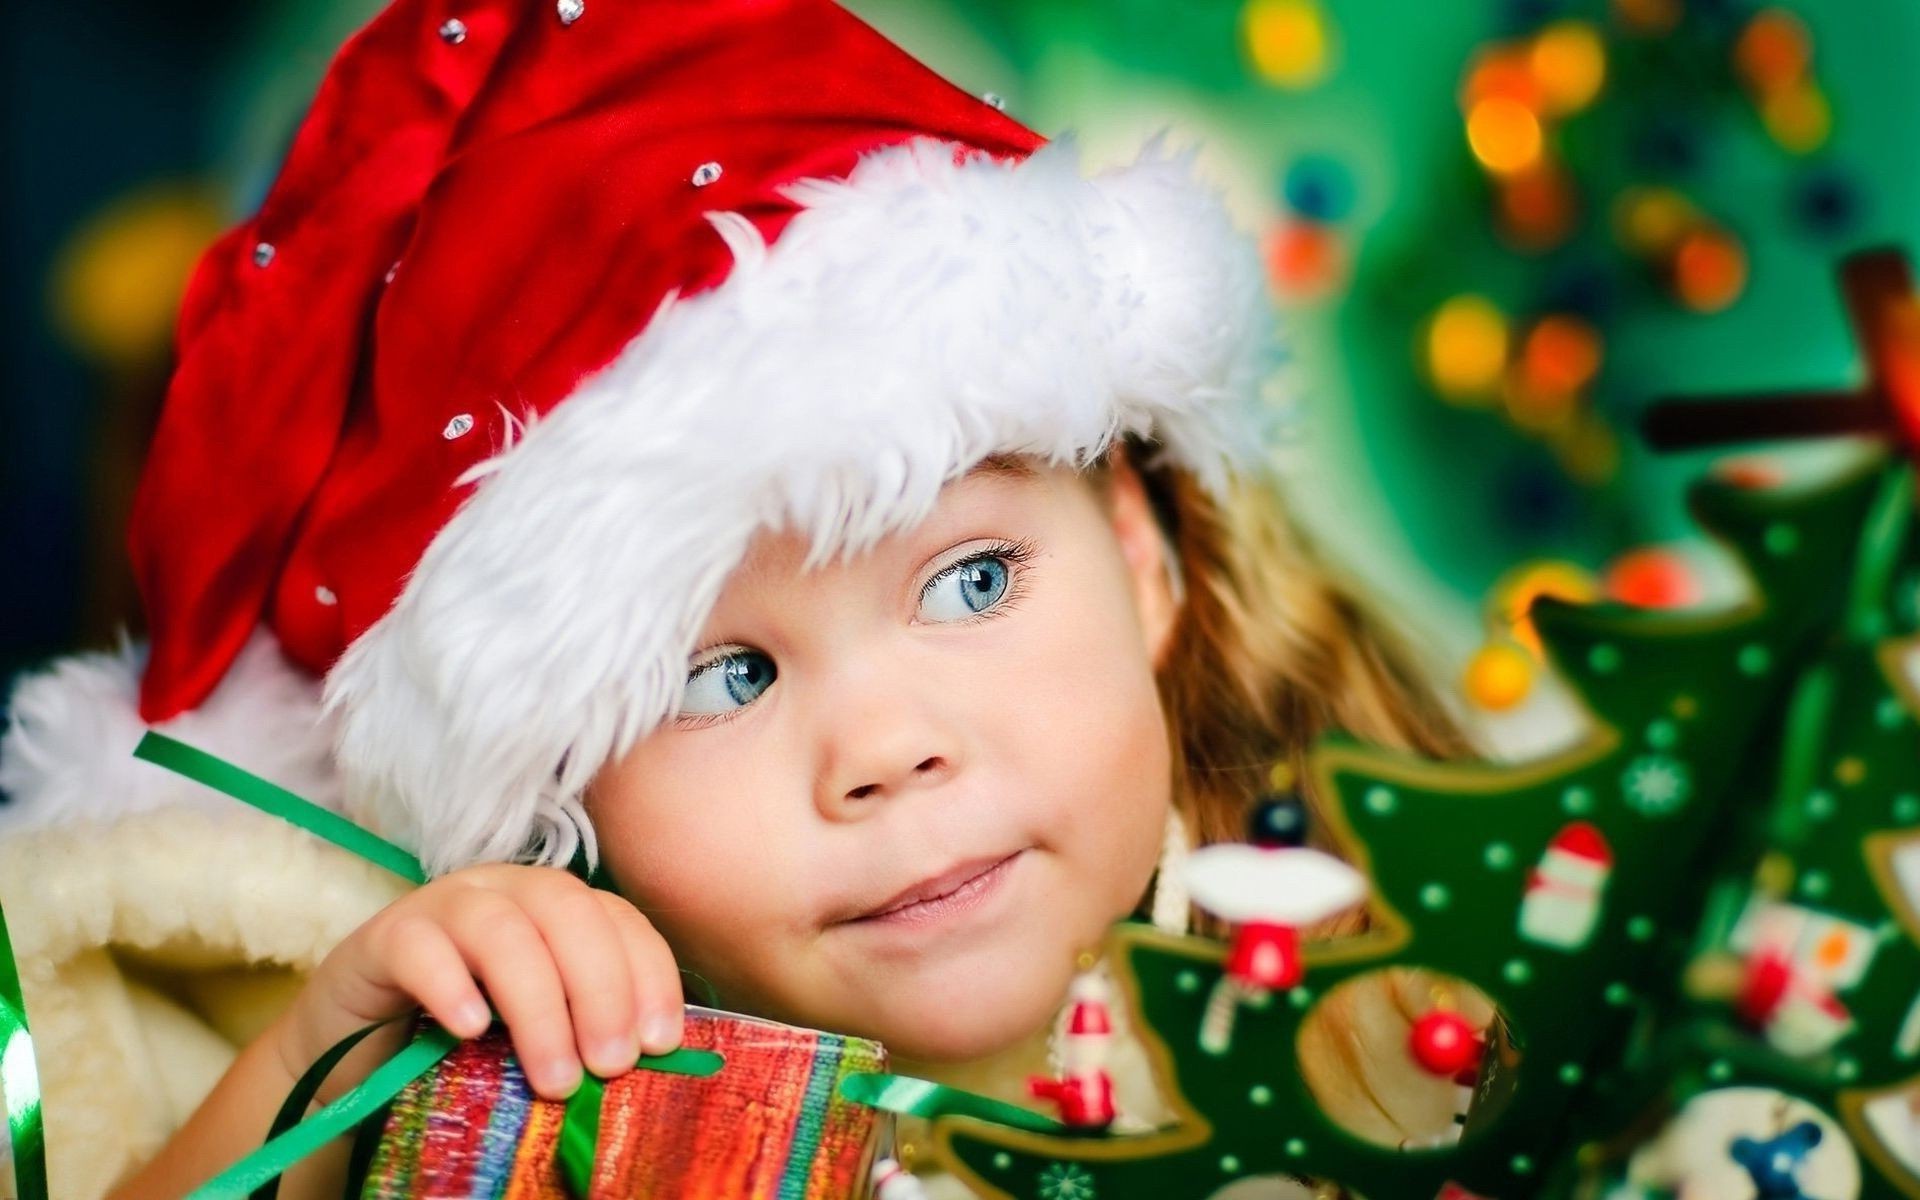 новый год рождество зима ребенок удовольствие мало милые праздник подарок крышка игрушка снег девушка ева радость портрет счастье